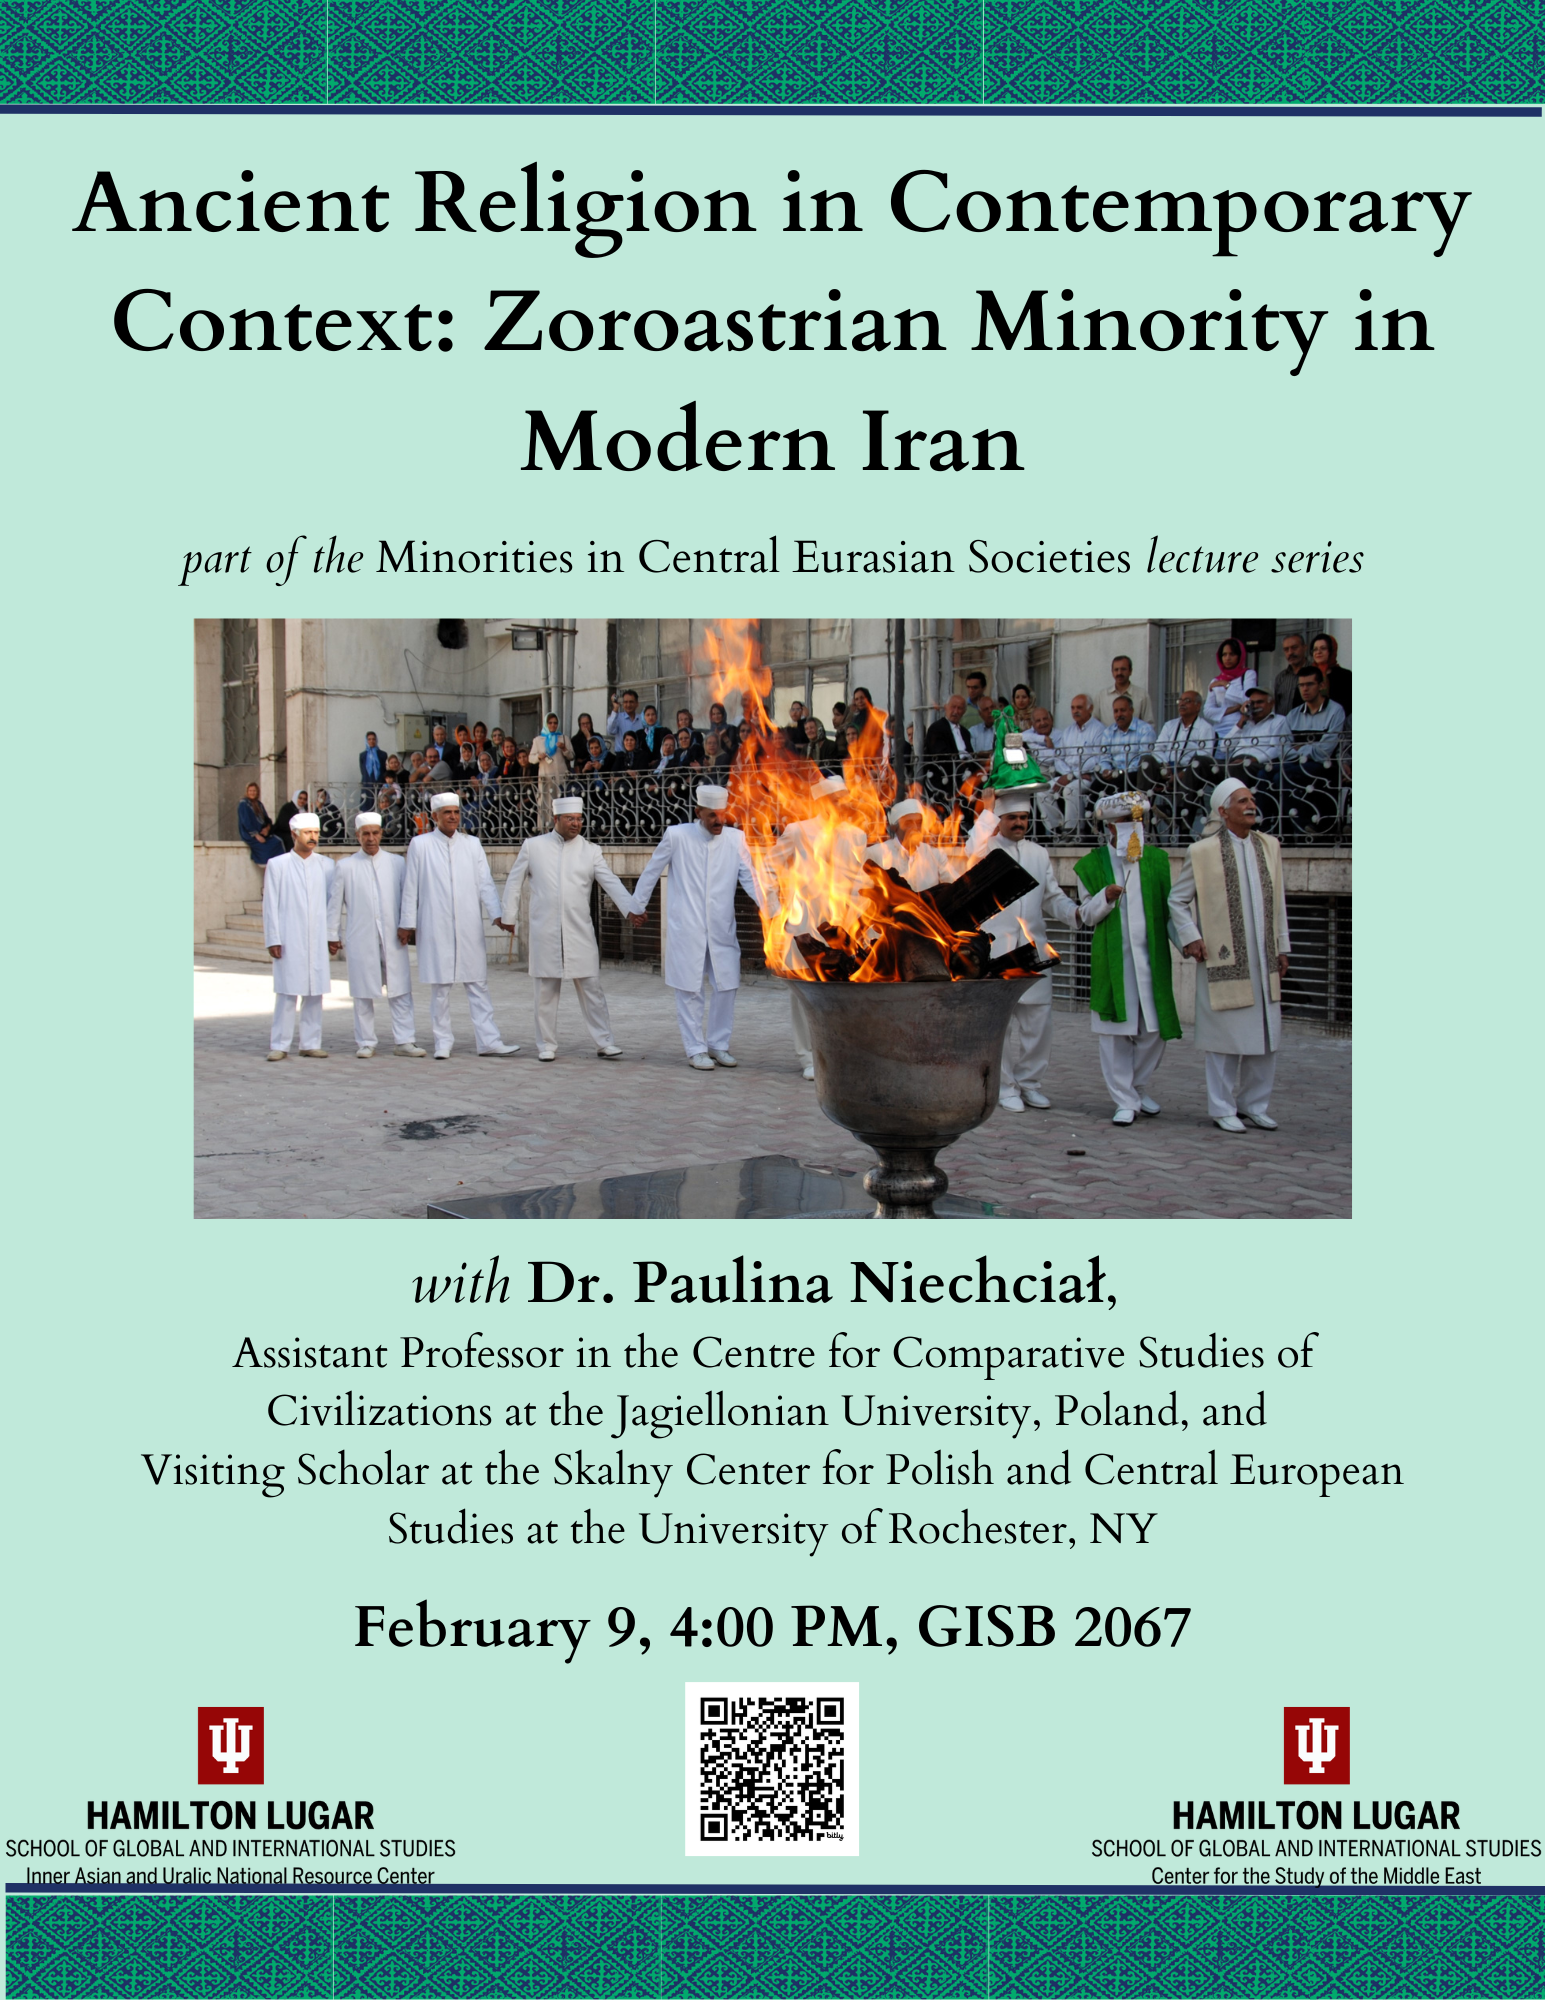 [Plakat wykładu, na zielonym tle tytuł Ancient Religion in Contemporary Context: Zoroastrian Minority in Modern Iran, informacje oraz fotografia.]